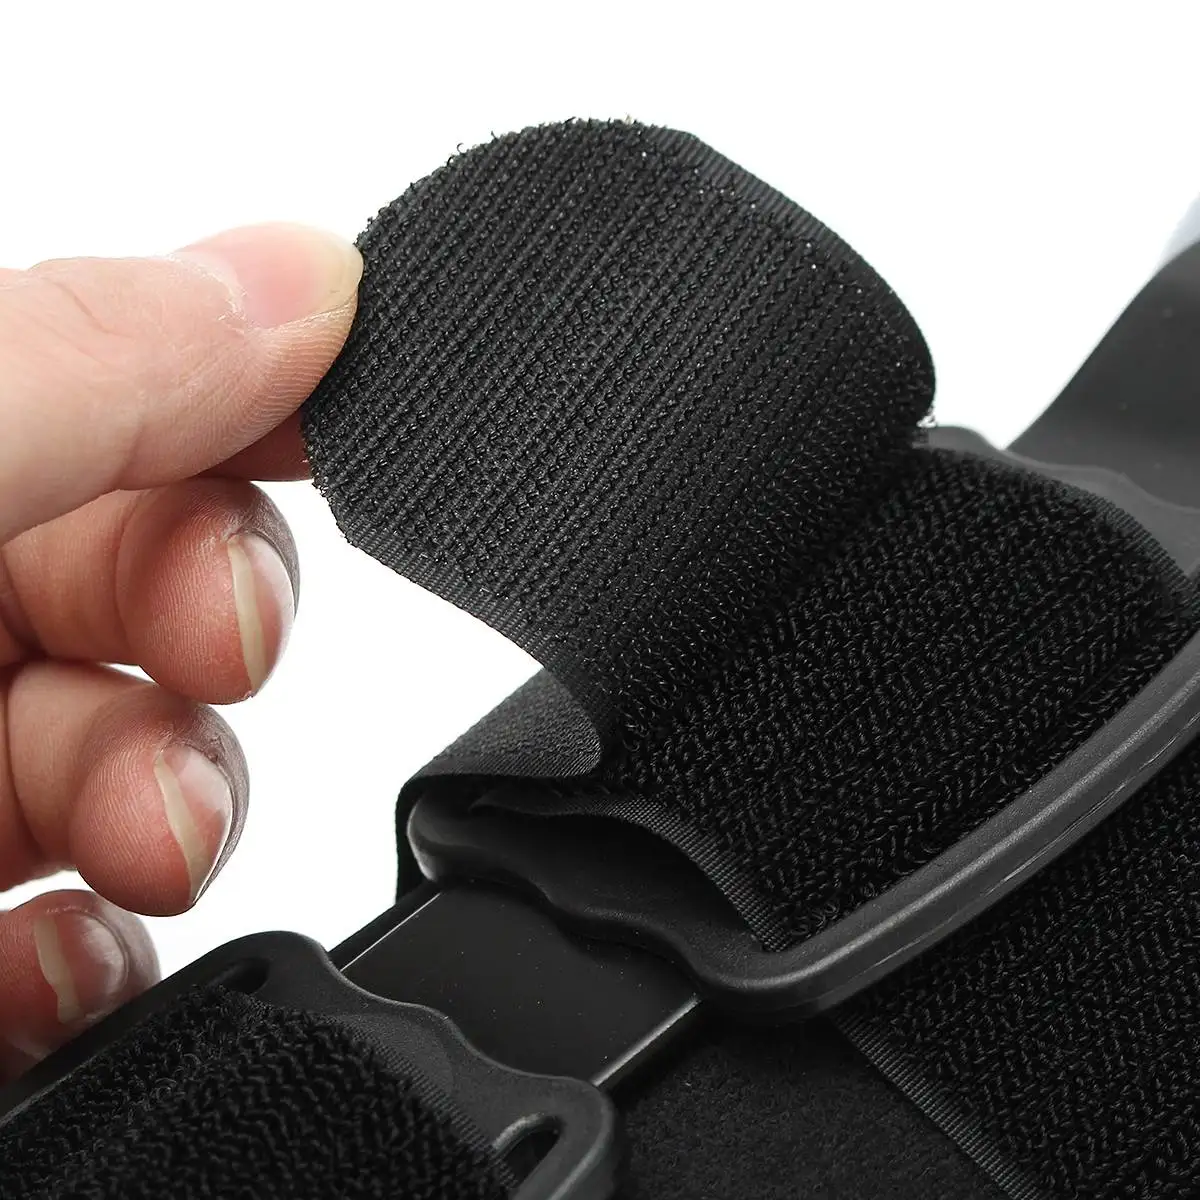 Профессиональный локоть руки слинг Скоба поддержка плеча иммобилайзер защита с ремешком